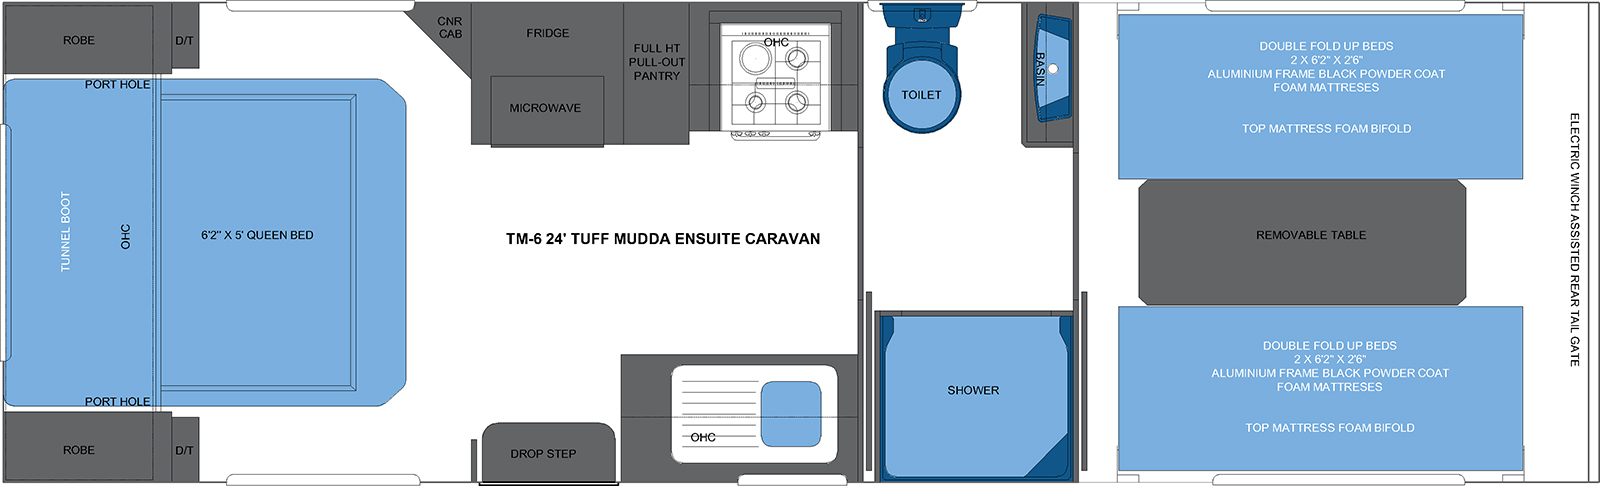 TM-6 24' TUFF MUDDA ENSUITE CARAVAN